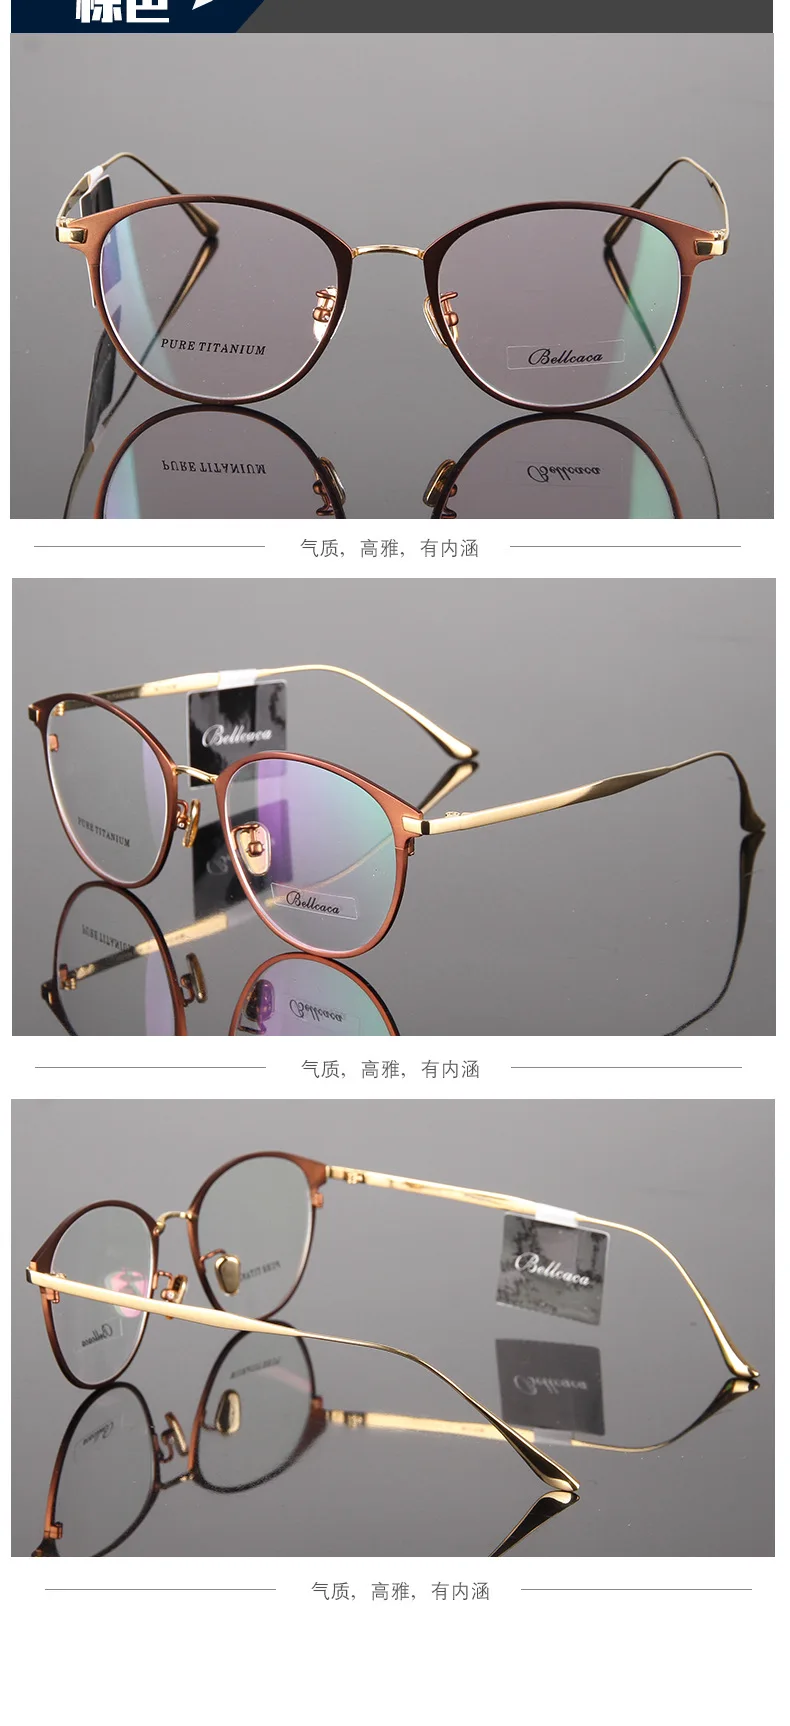 Титан очки круглые близорукие очки Для мужчин/Для женщин очки высокое качество двухцветный кошачий глаз очки 950